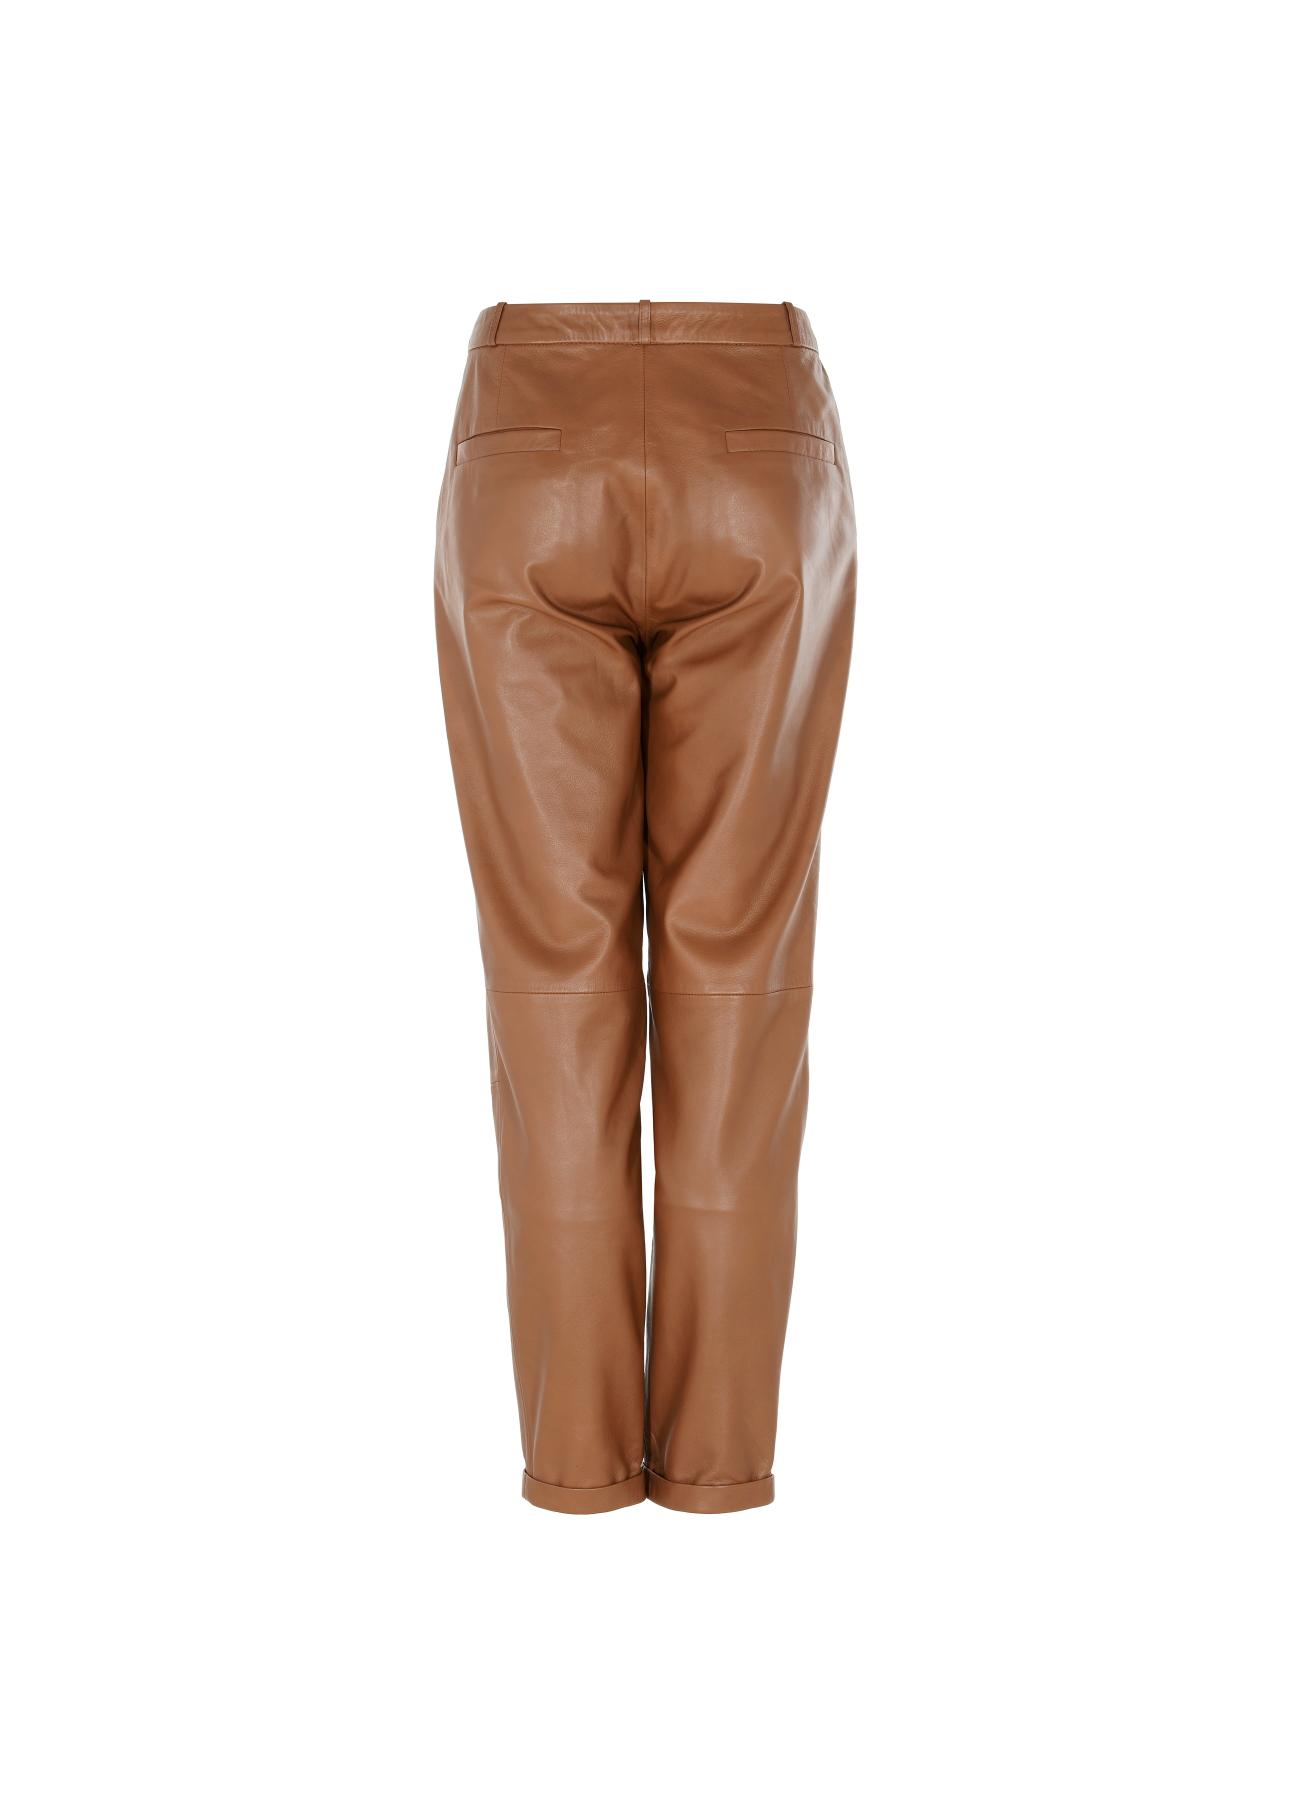 Spodnie skórzane karmelowe damskie SPODS-0022-1103(W22)